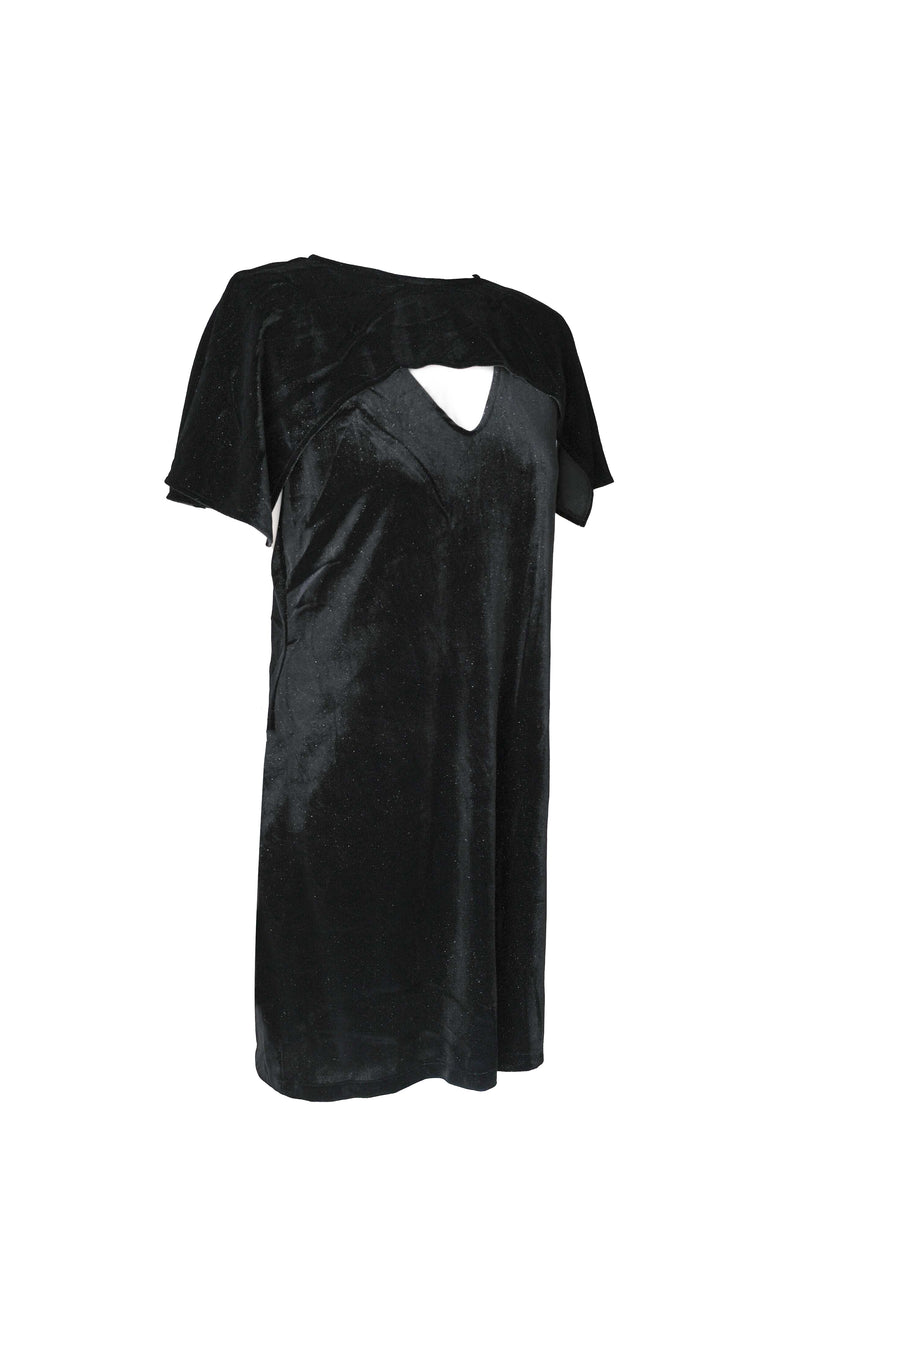 Velvet Cape Dress - Sparkle Black